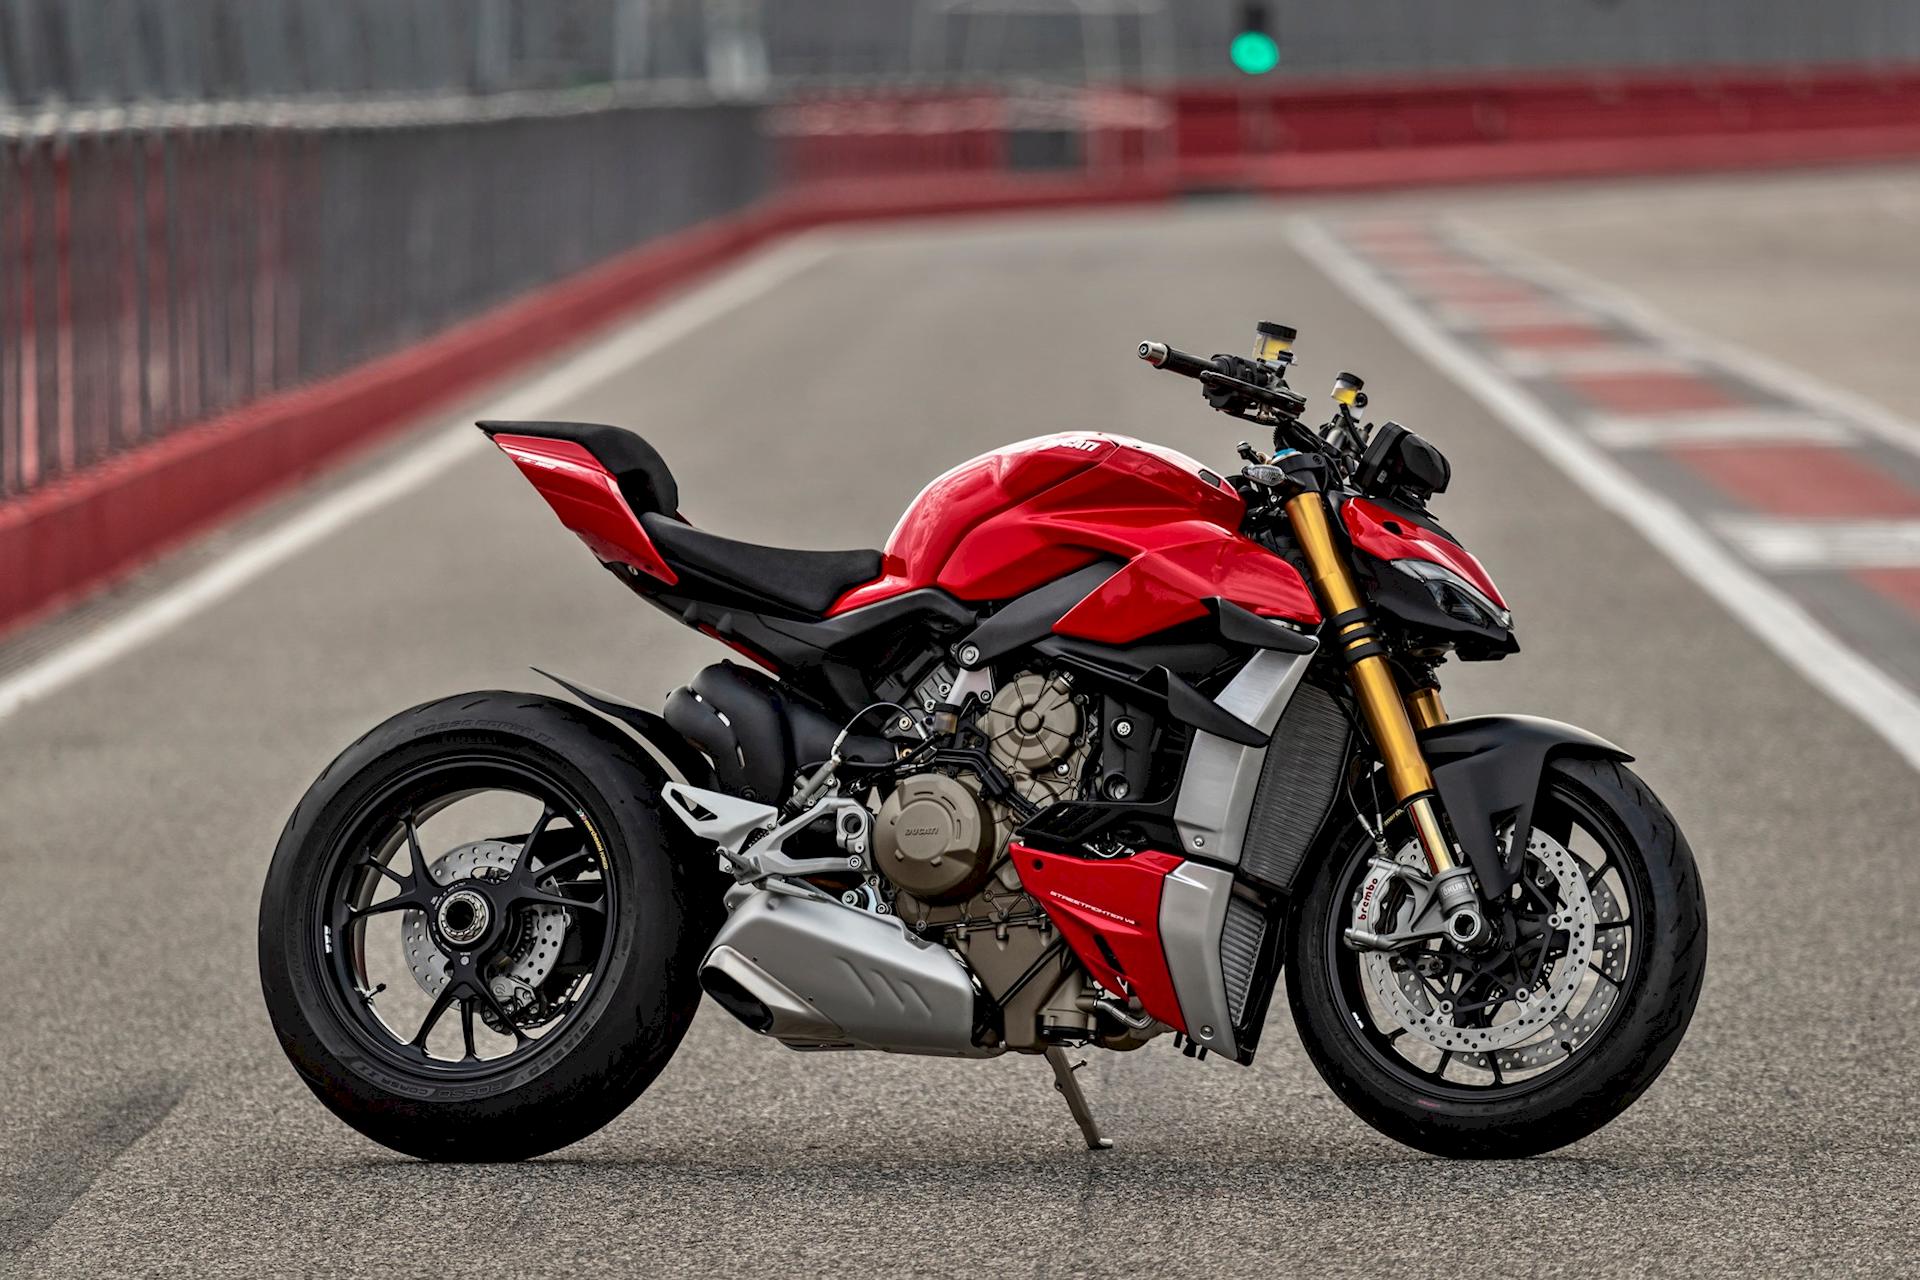 Ducati Streetfighter V4 S 2020